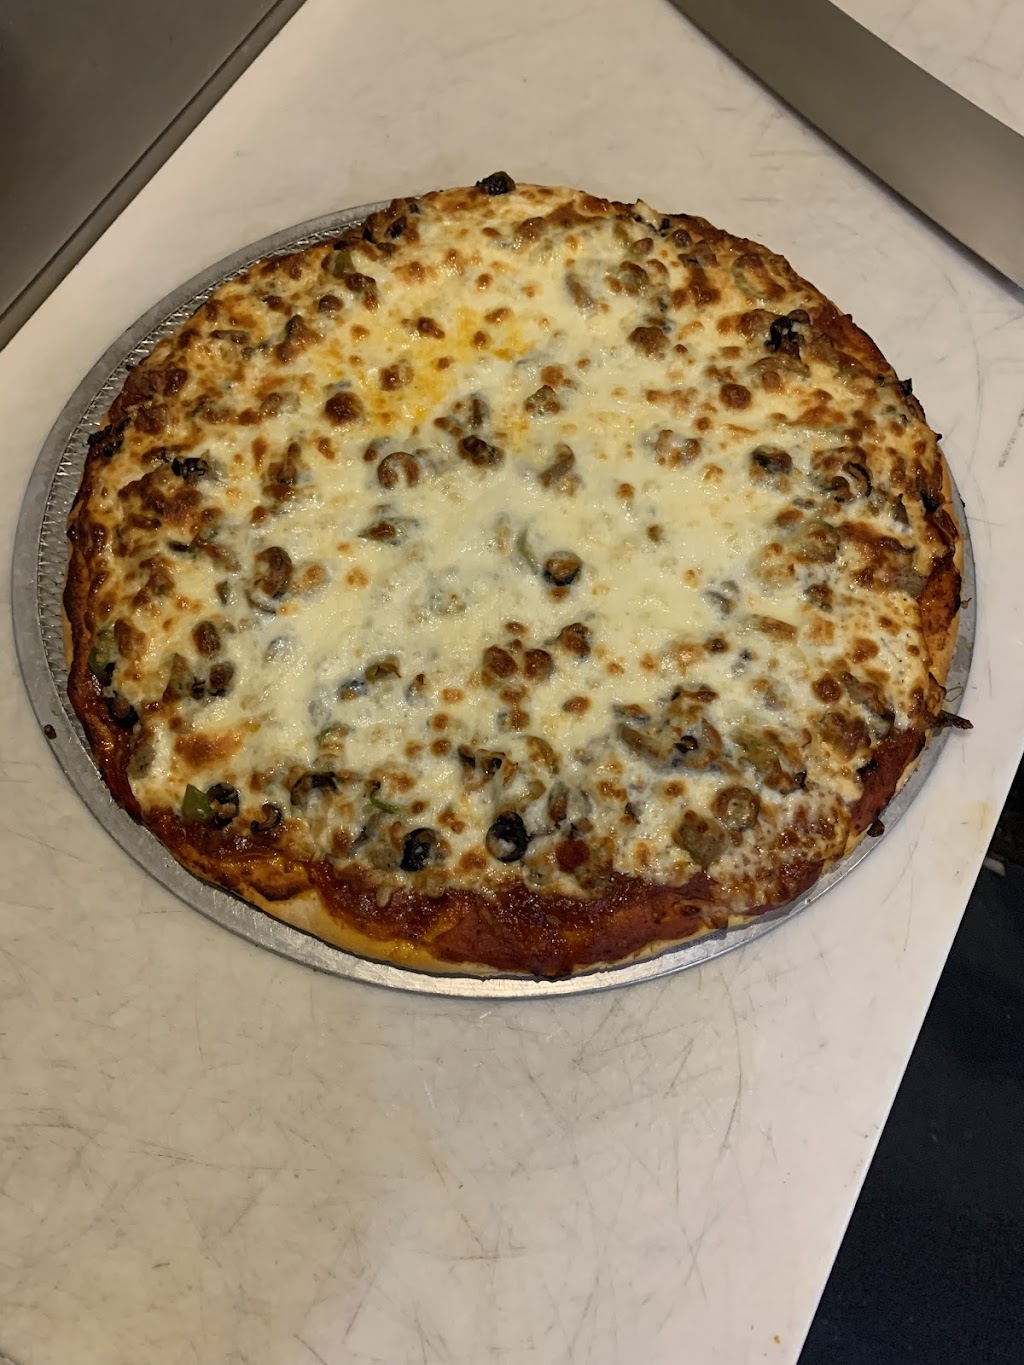 Jedas Pizza & BBQ | 511 N 14th St, Fort Calhoun, NE 68023, USA | Phone: (402) 468-4250